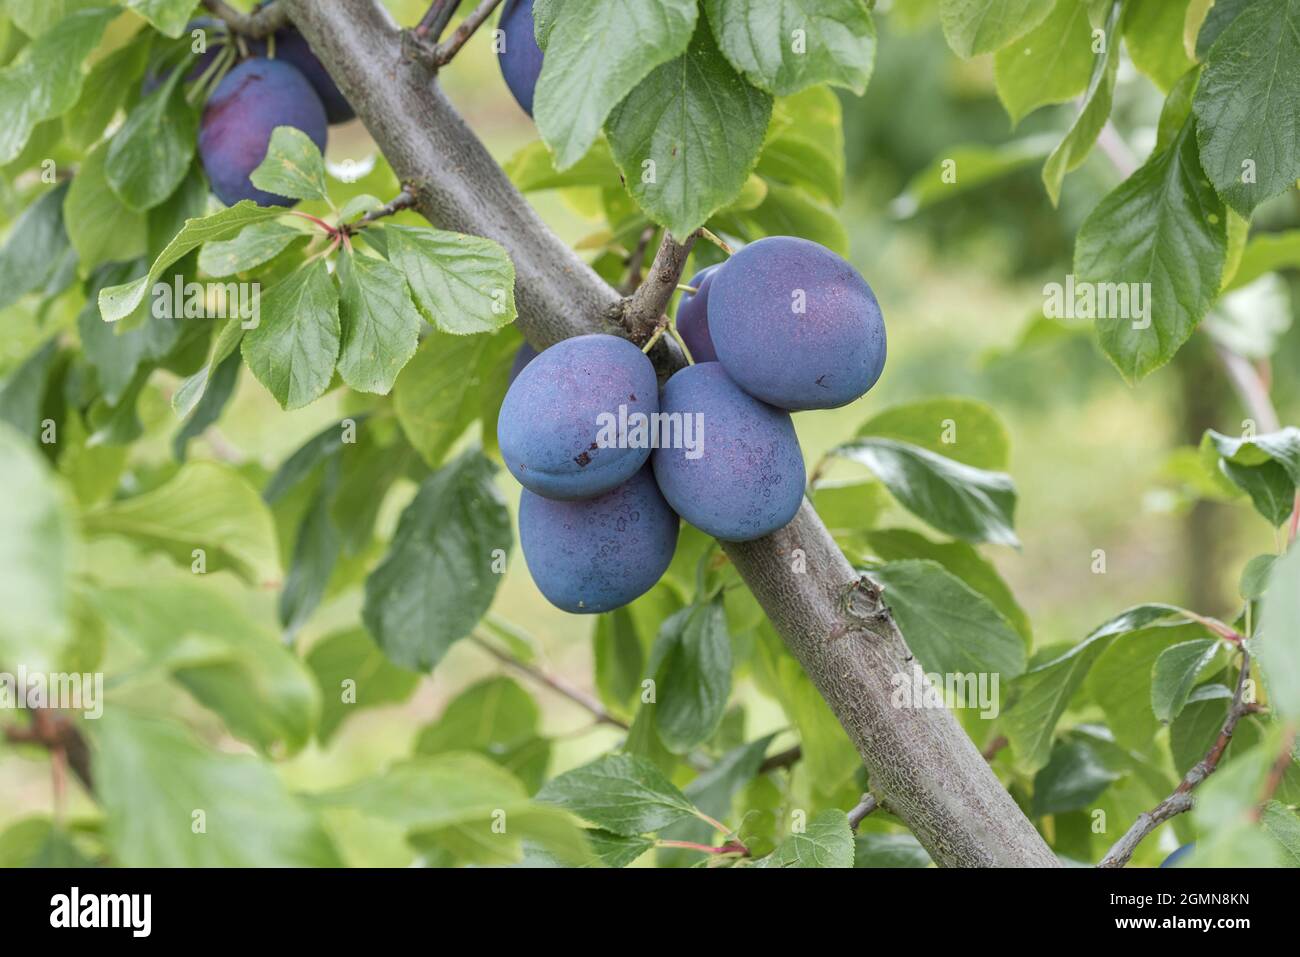 Prunier européenne (Prunus domestica 'Président', Prunus domestica Président), prunes sur une branche, président du cultivar Banque D'Images